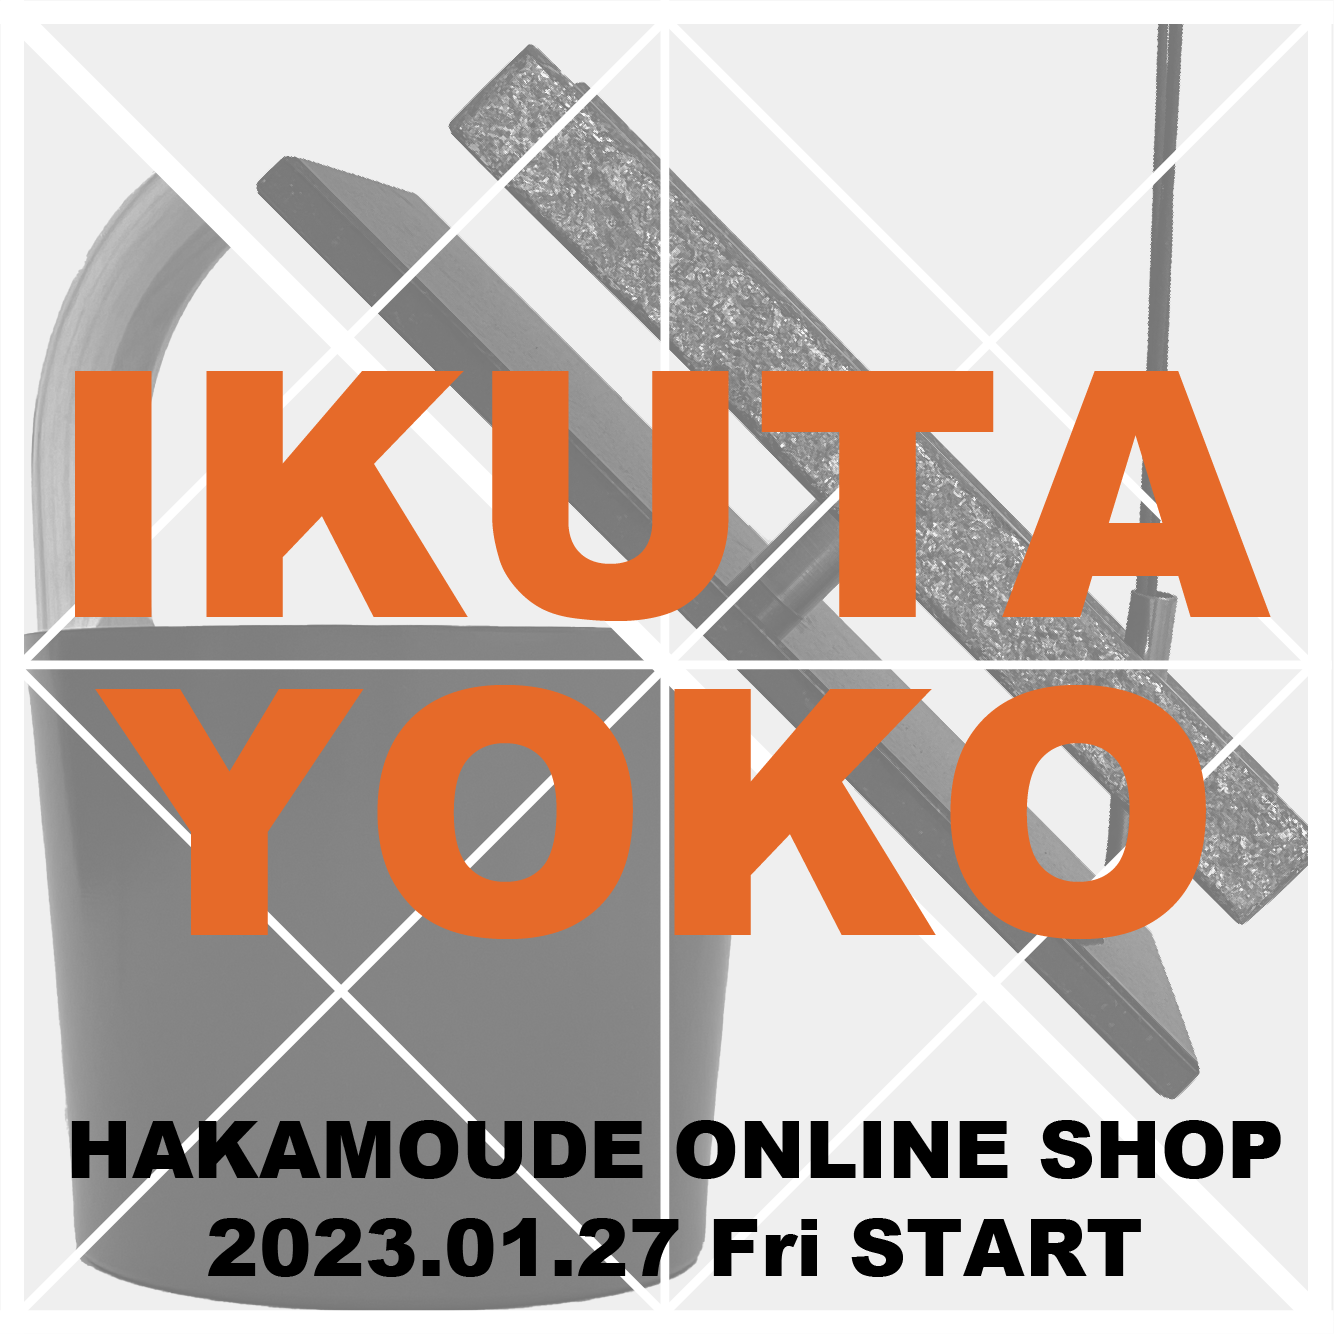 「IKUTAYOKO」の商品の取り扱いを開始しました！